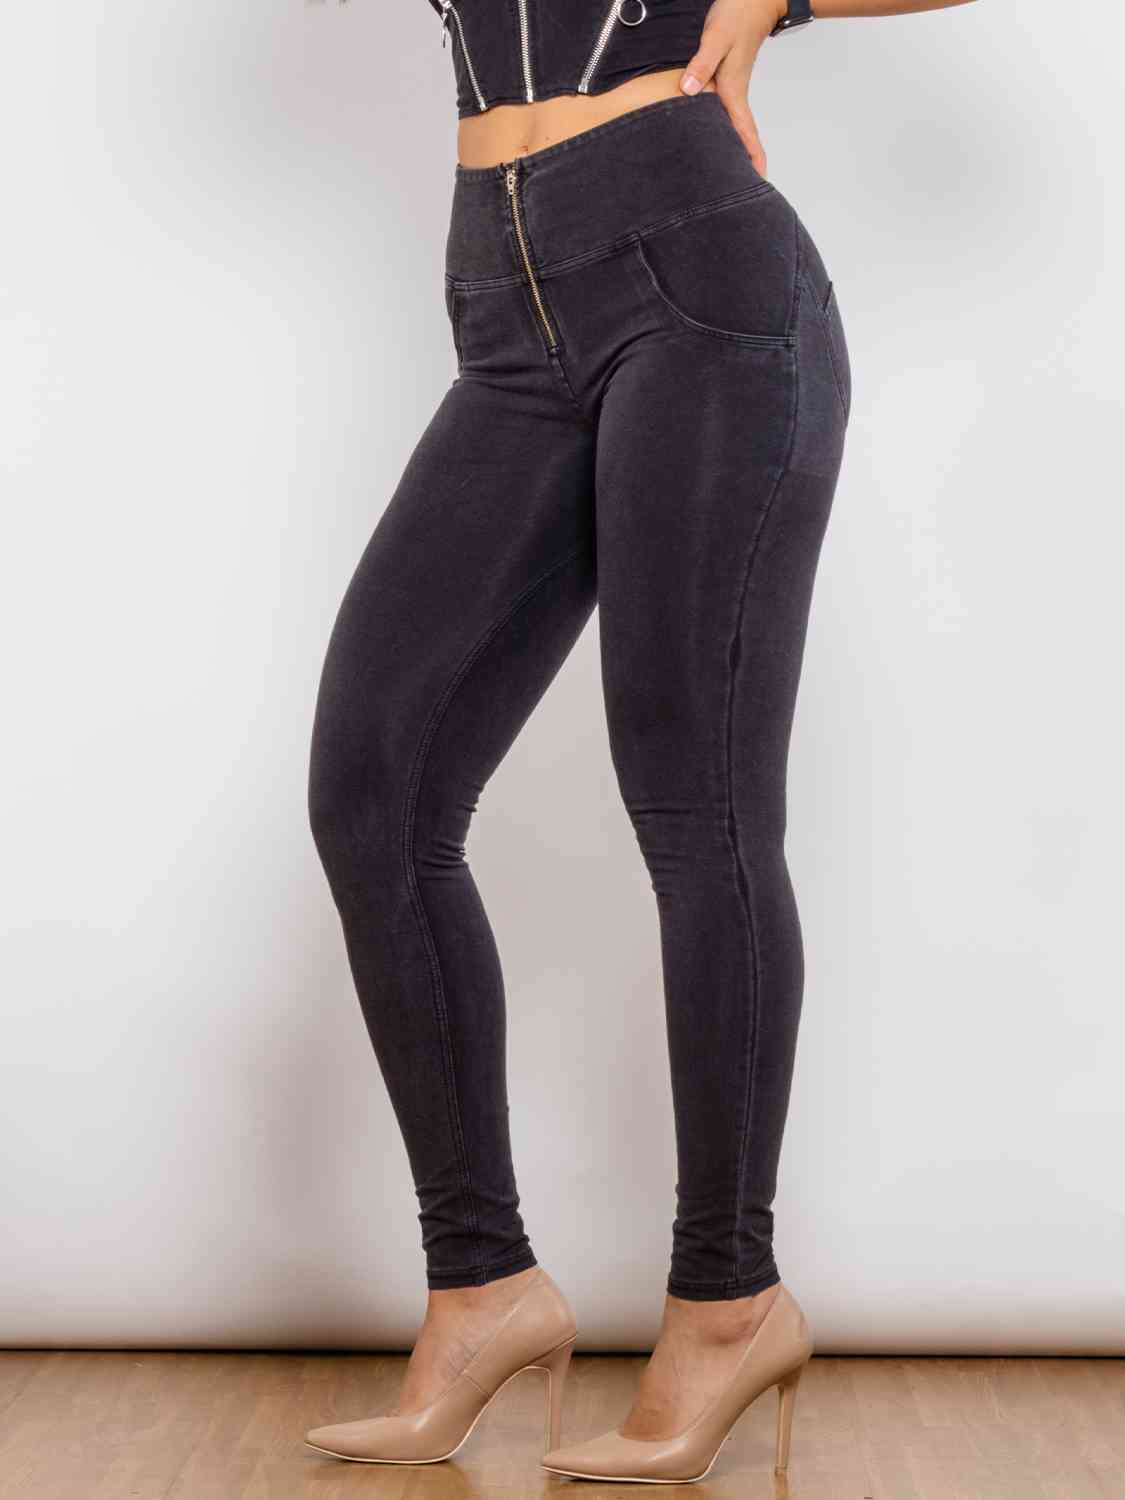 Jeans ajustados con cremallera de tamaño completo